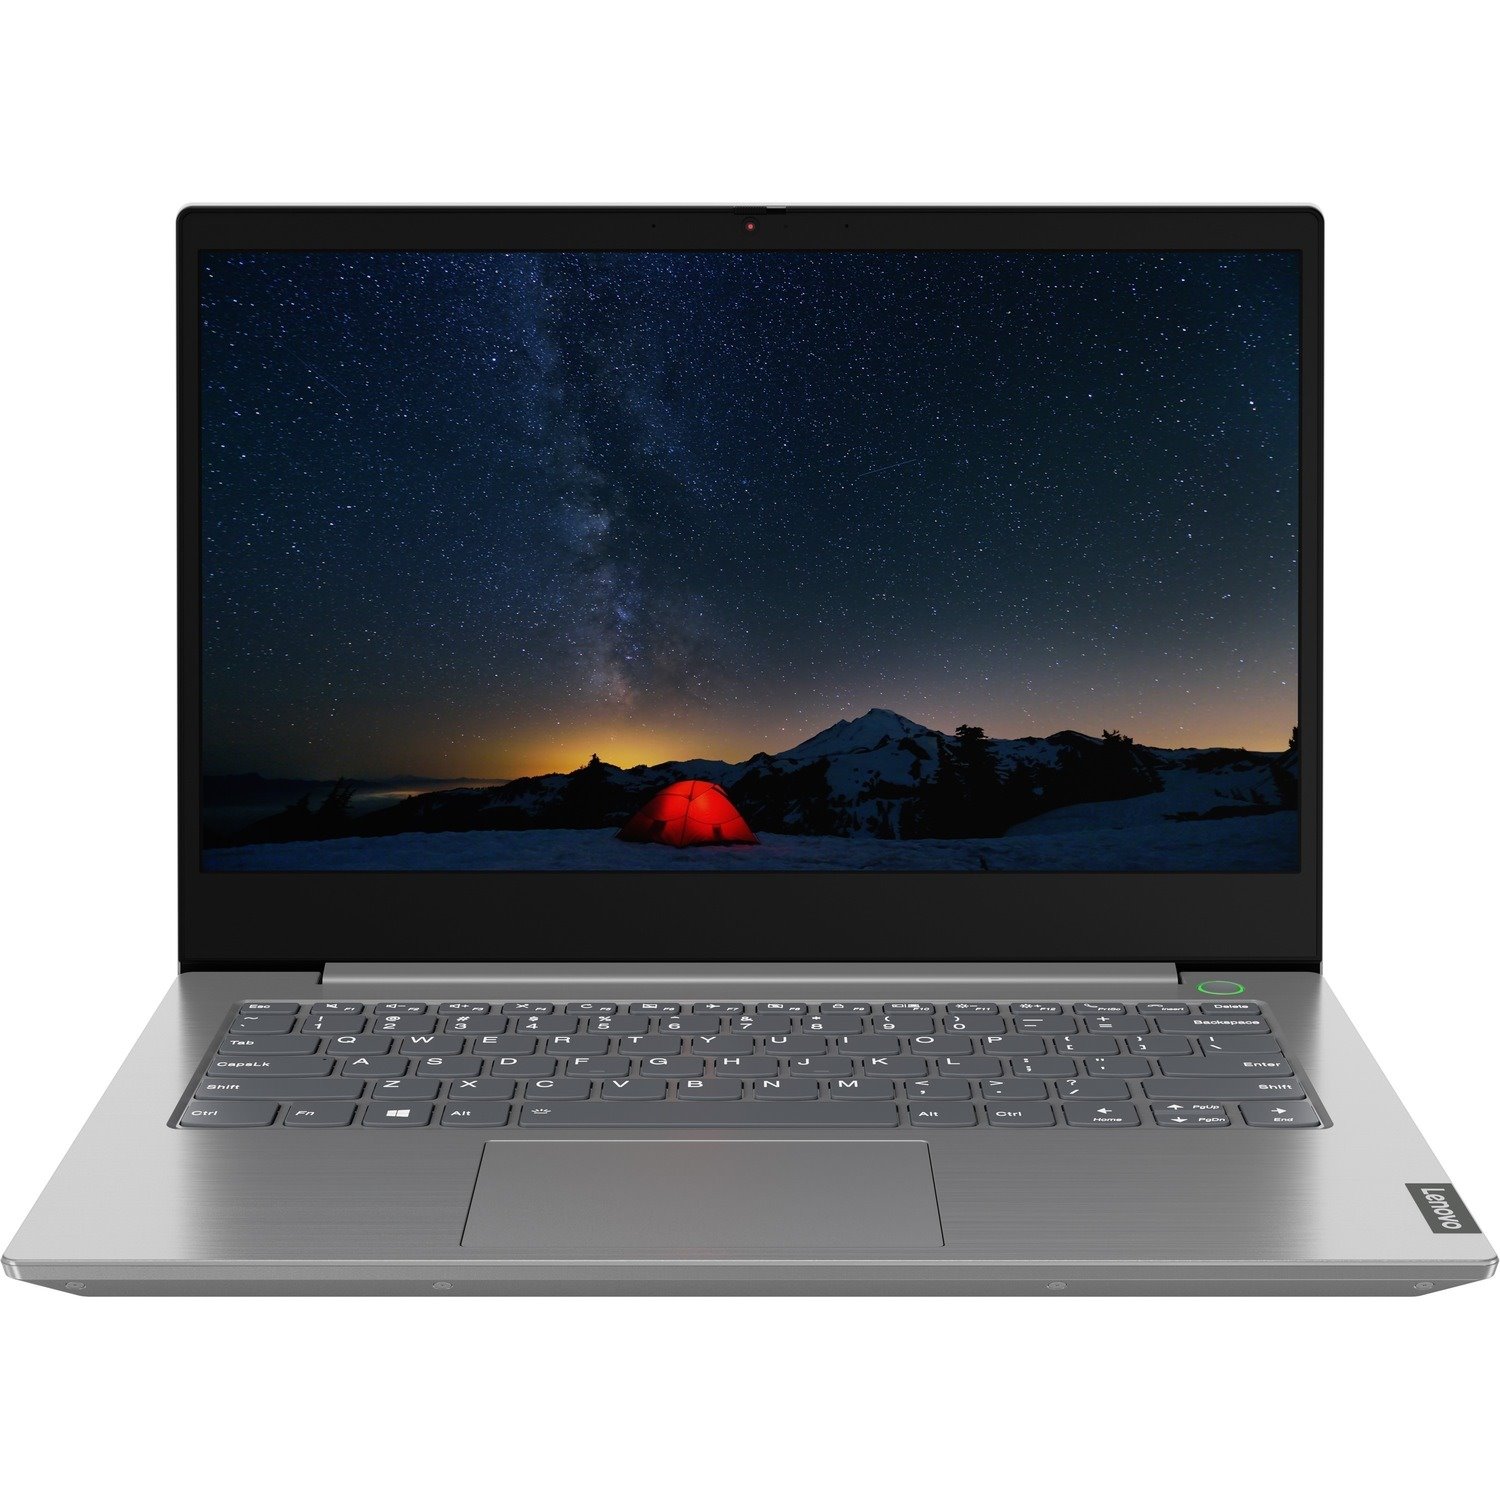 Lenovo ThinkBook 14-IIL 20SL0012US 14" Notebook - Full HD - 1920 x 1080 - Intel Core i7 10th Gen i7-1065G7 Quad-core (4 Core) 1.30 GHz - 8 GB Total RAM - 512 GB SSD - Mineral Gray